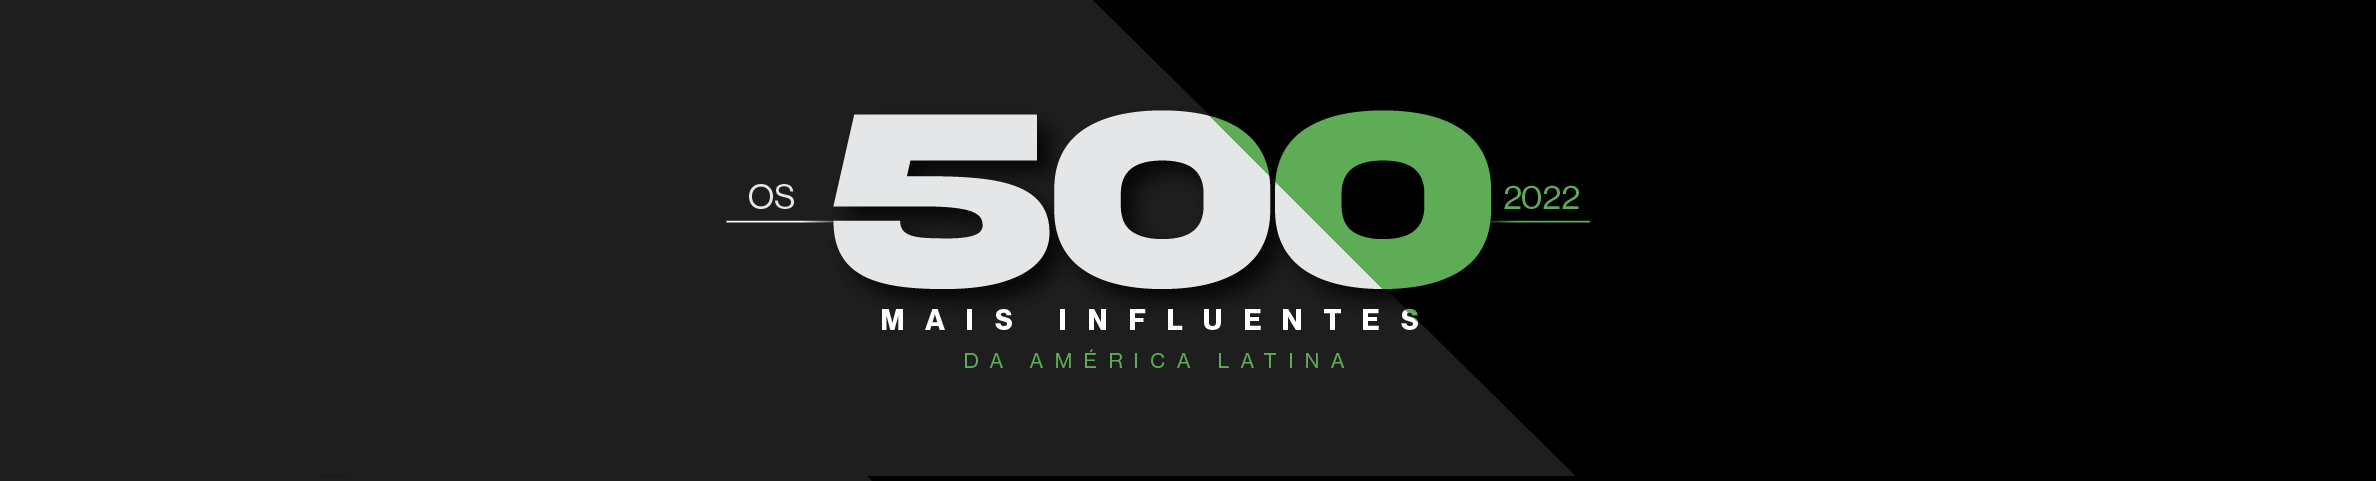 Os 500 Mais Influentes da América Latina 2022